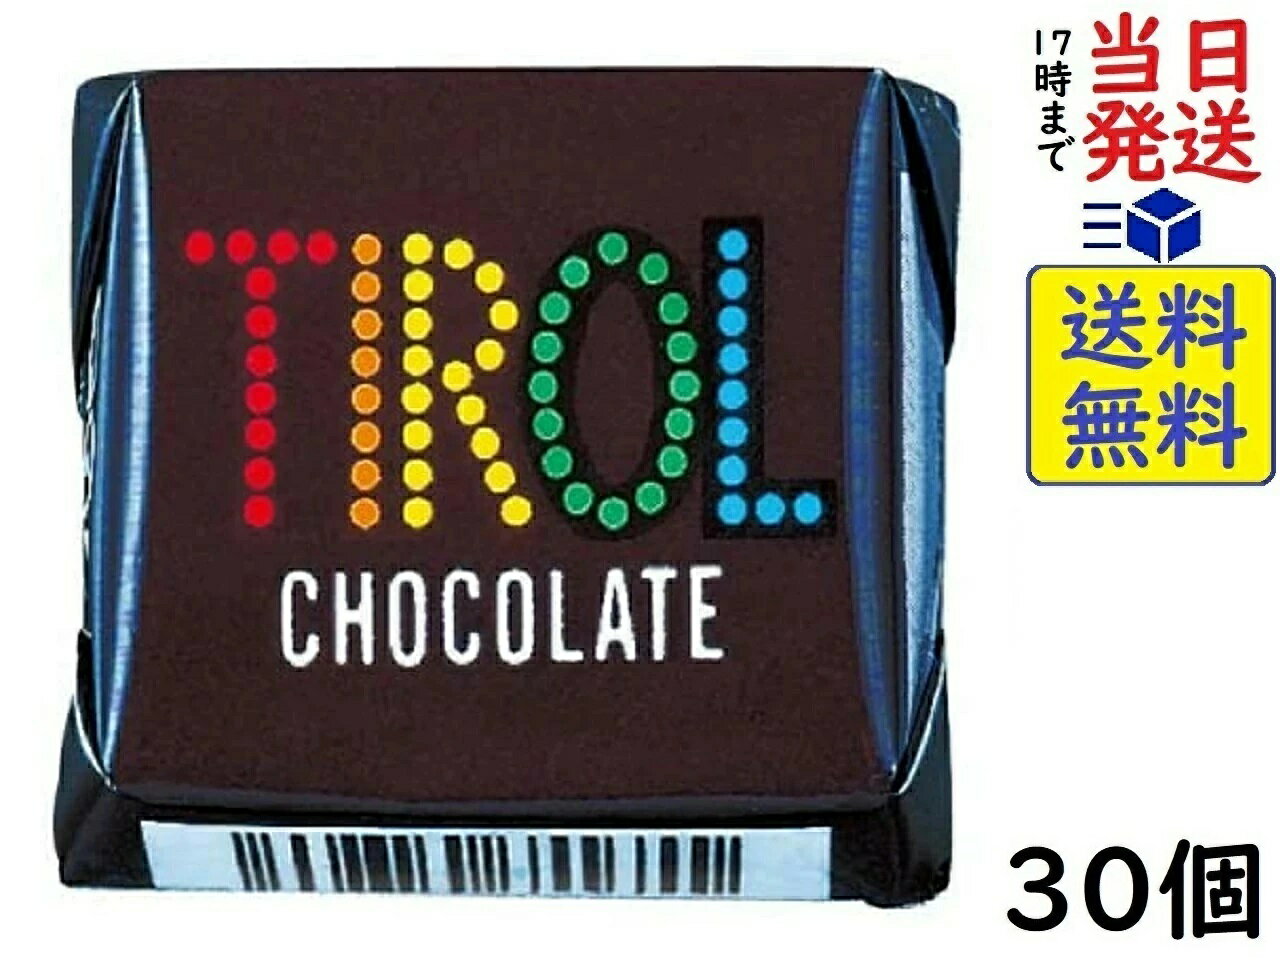 チロル チロルチョコ コーヒーヌガー 1個 ×30個賞味期限2025/01